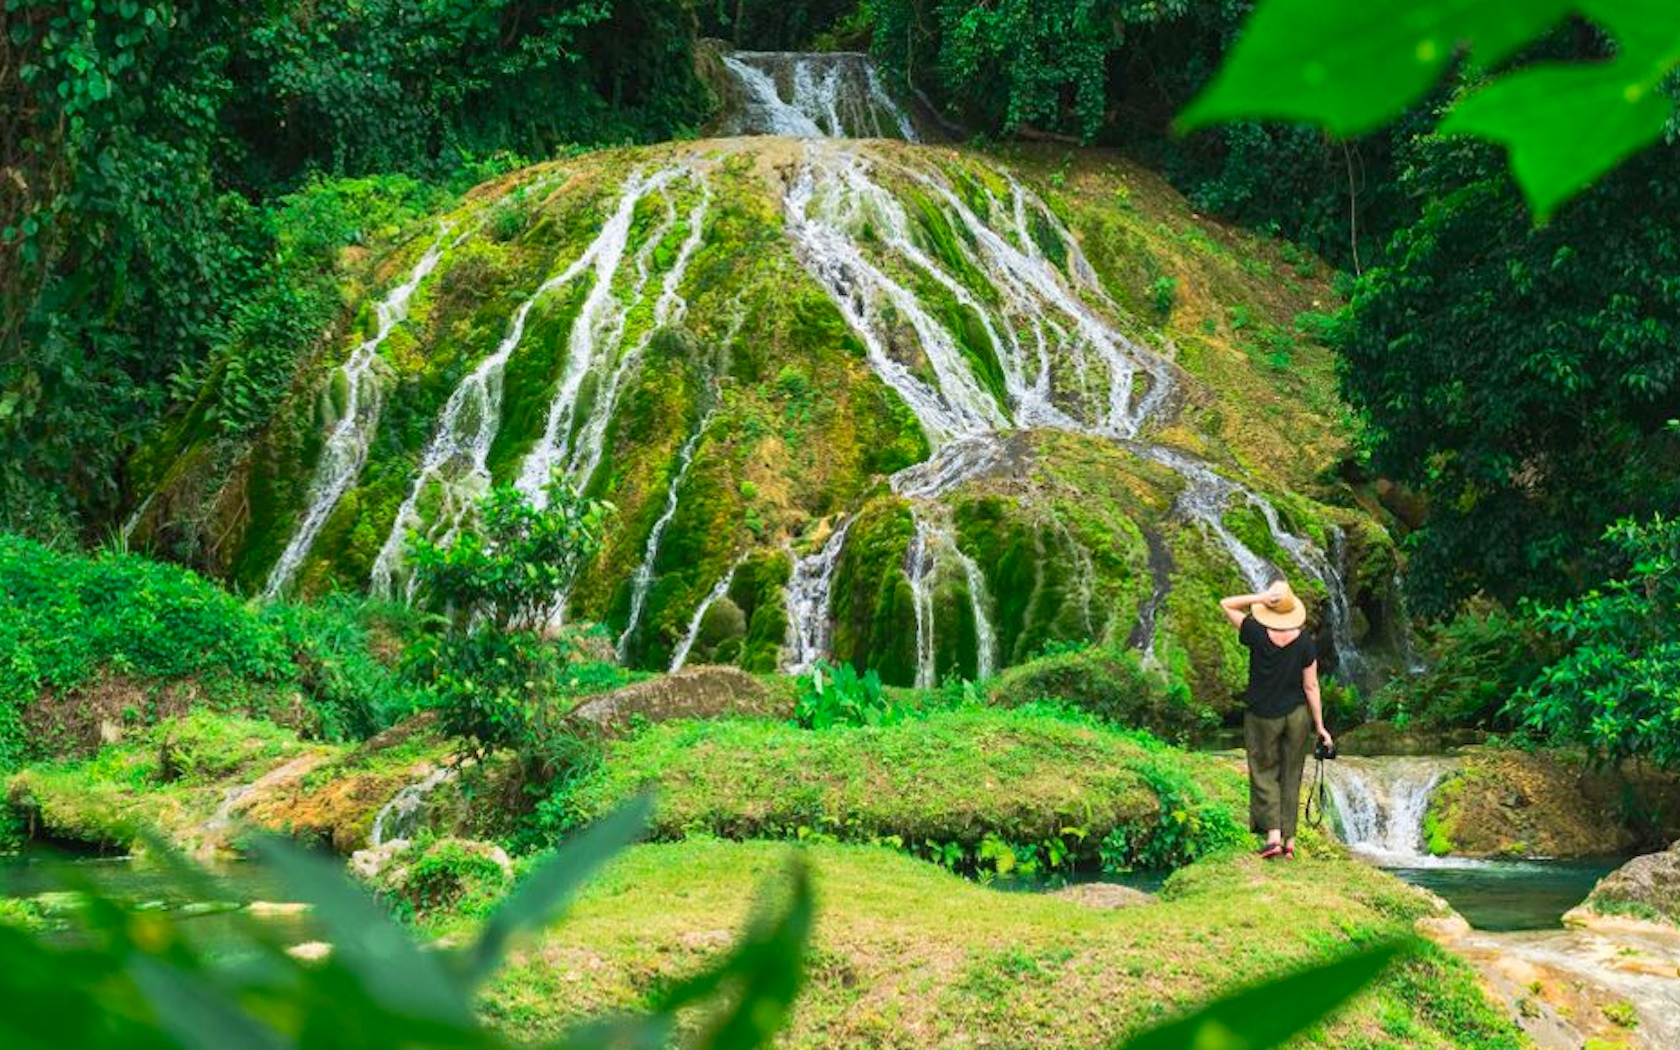 Vanuatu Guide: 3 Amazing Waterfalls You’ve Gotta Chase In Vanuatu